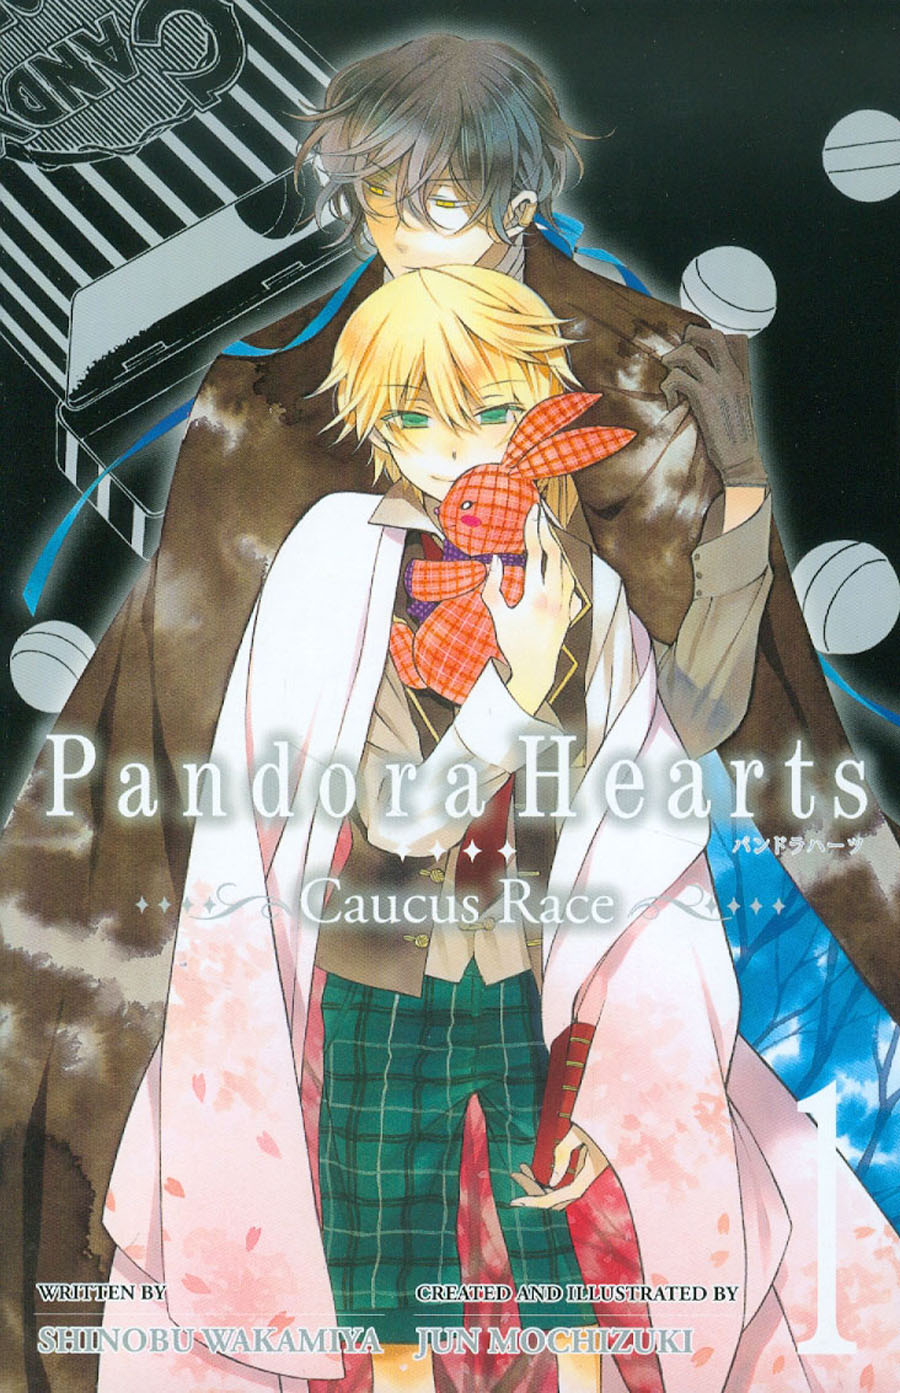 Pandora Hearts Caucus Race Novel Vol 1